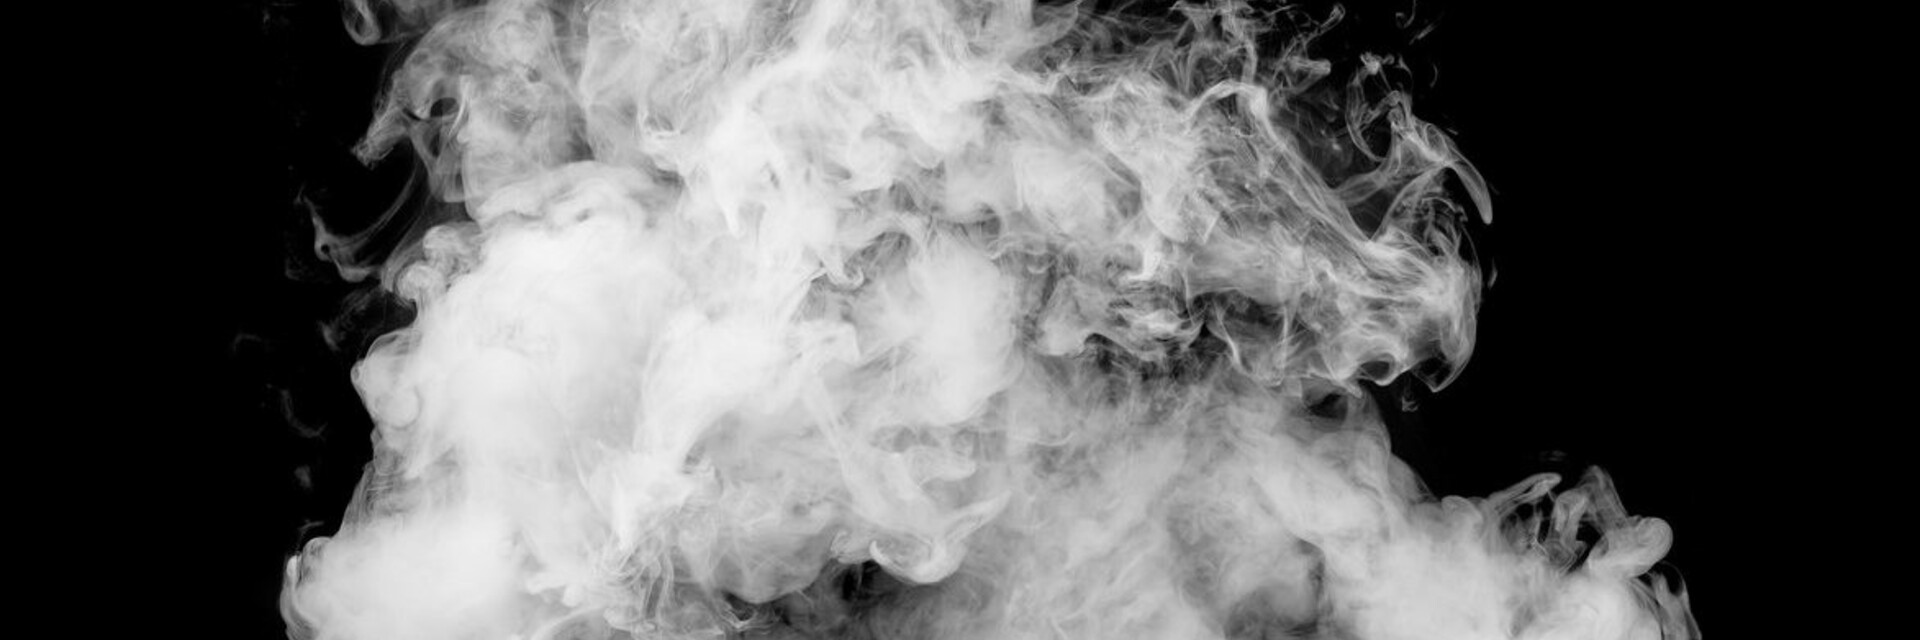 Fumo vibe. Дым. Белый дым. Дым от кальяна. Дым на черном фоне.